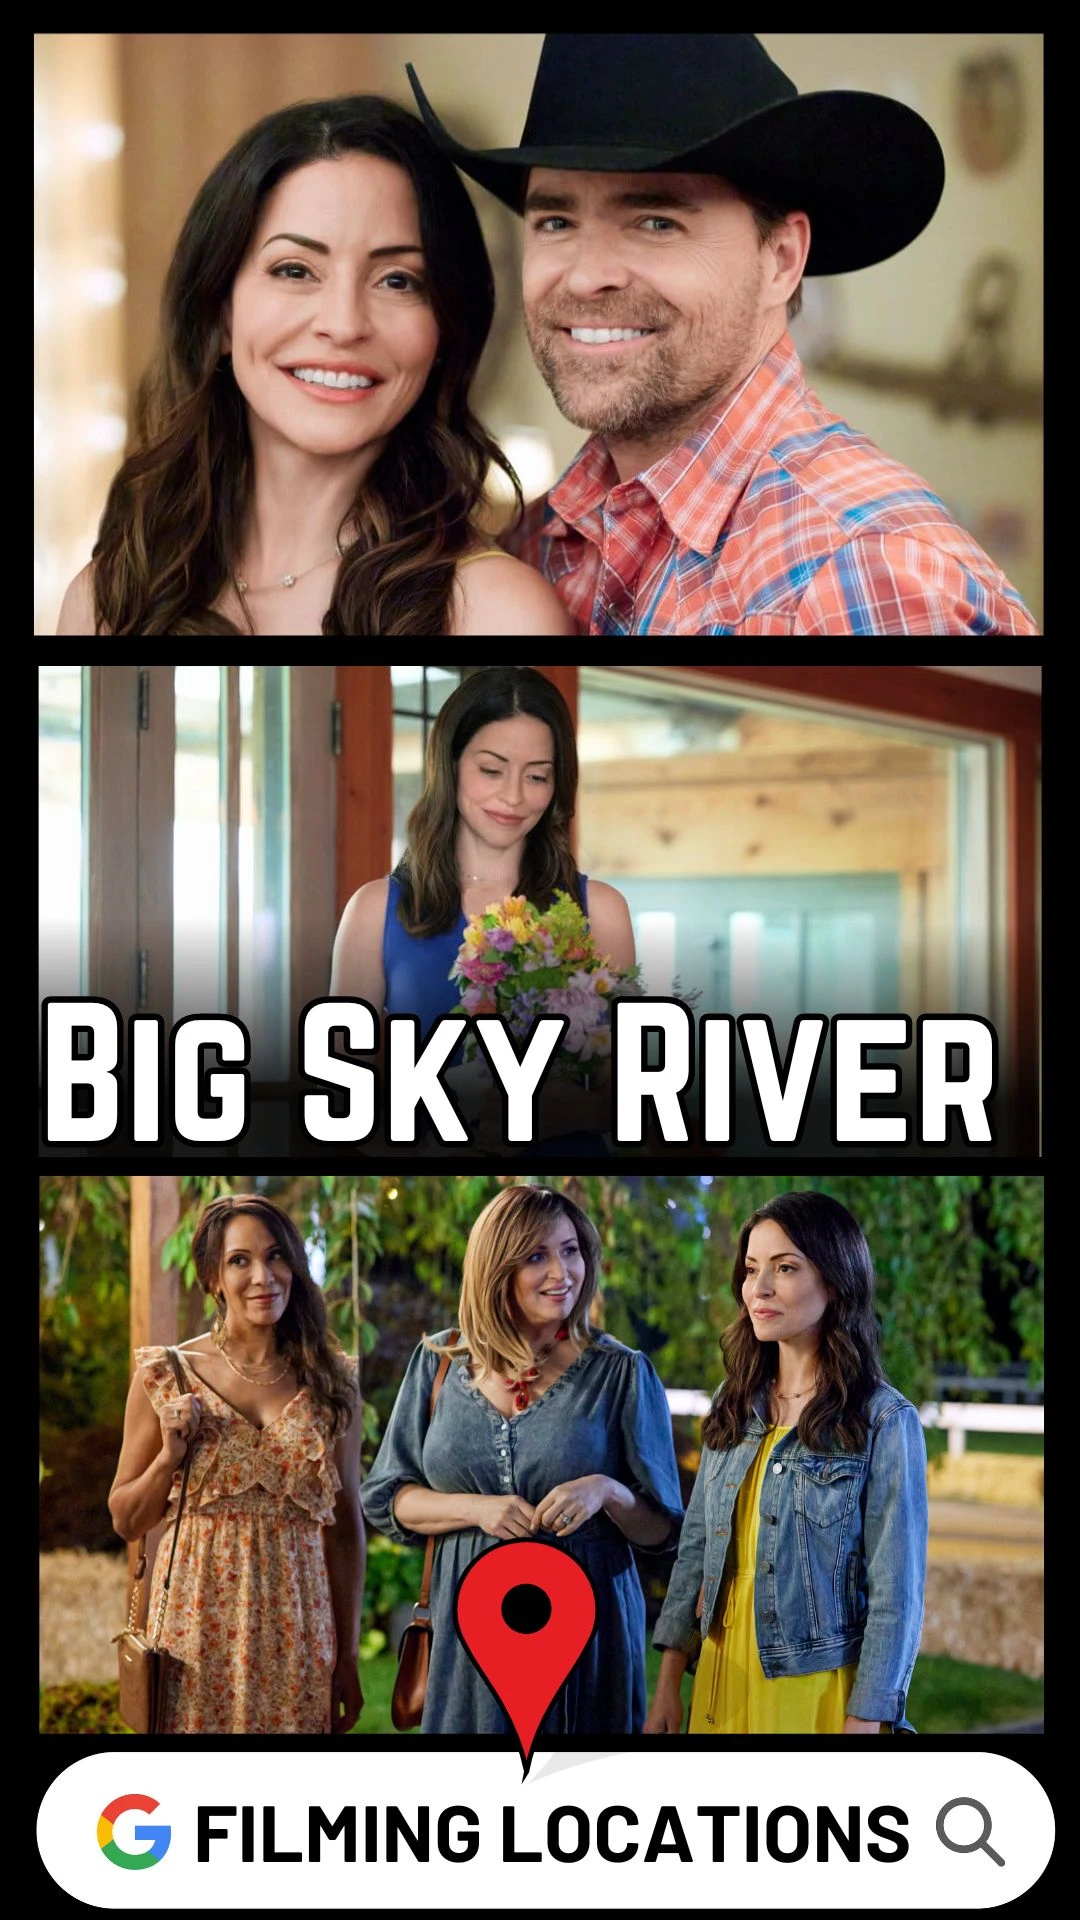 Big Sky River Filming Locations